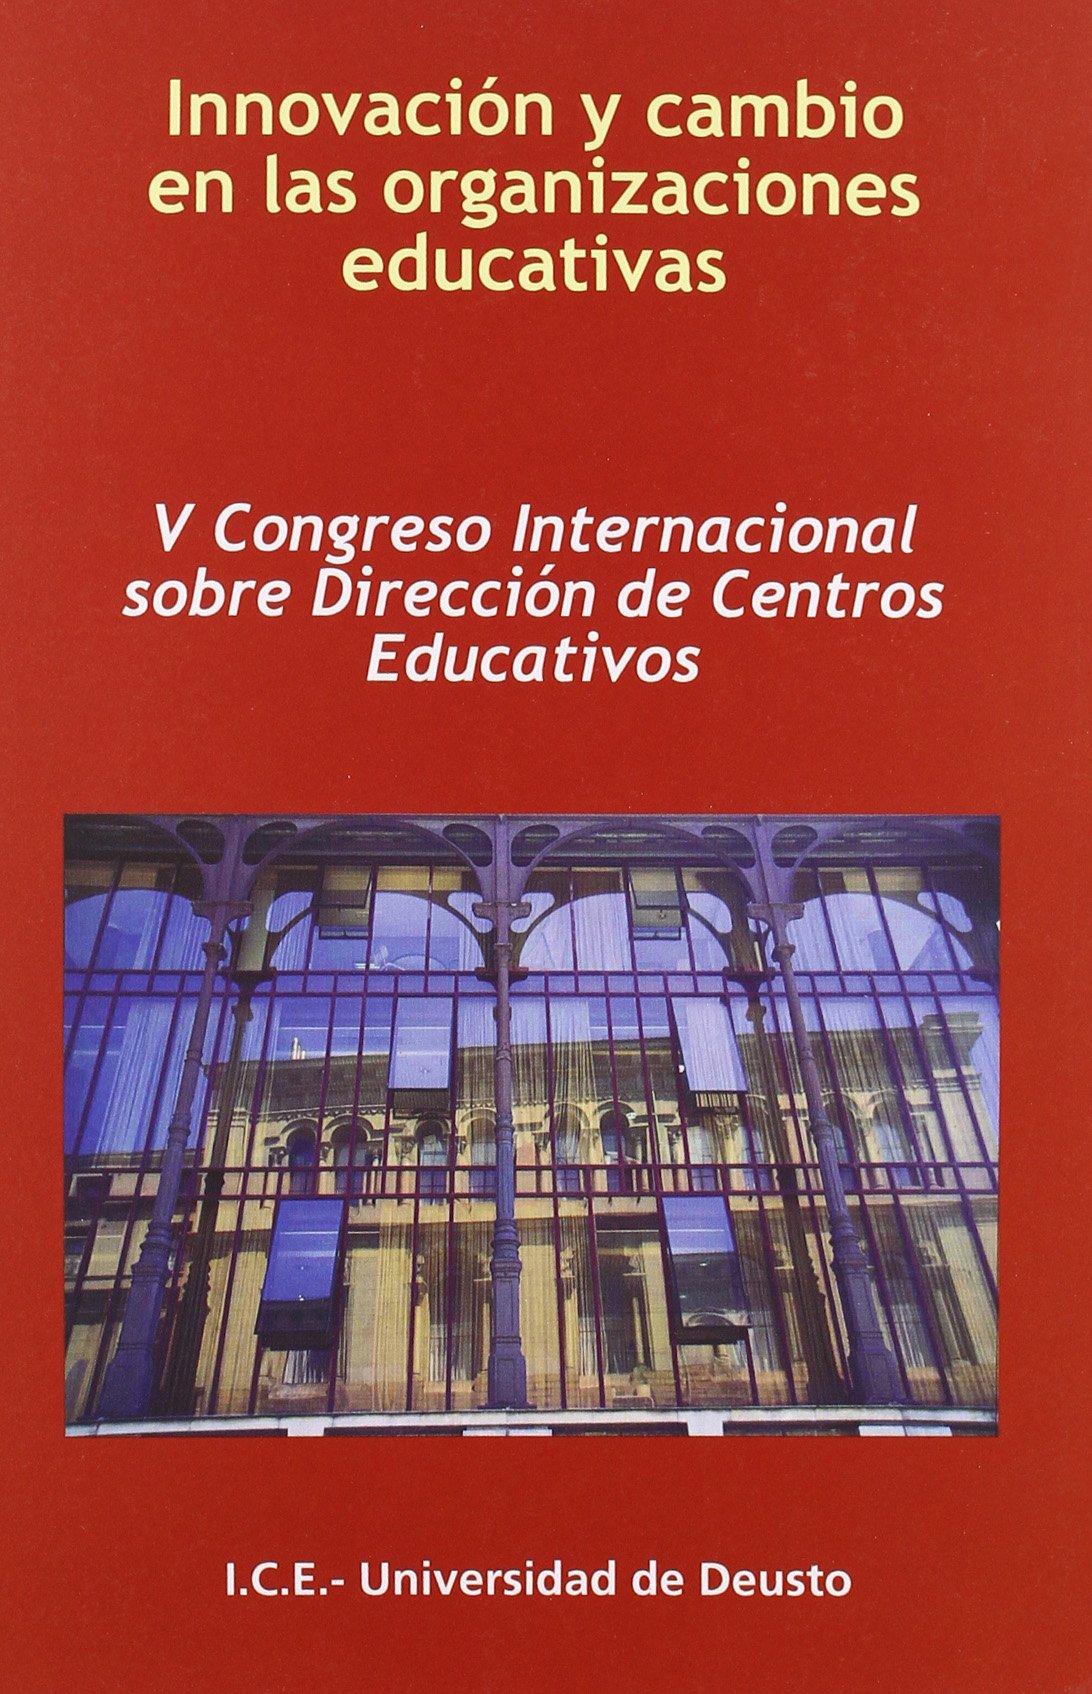 Imagen de portada del libro Innovación y cambio en las organizaciones educativas